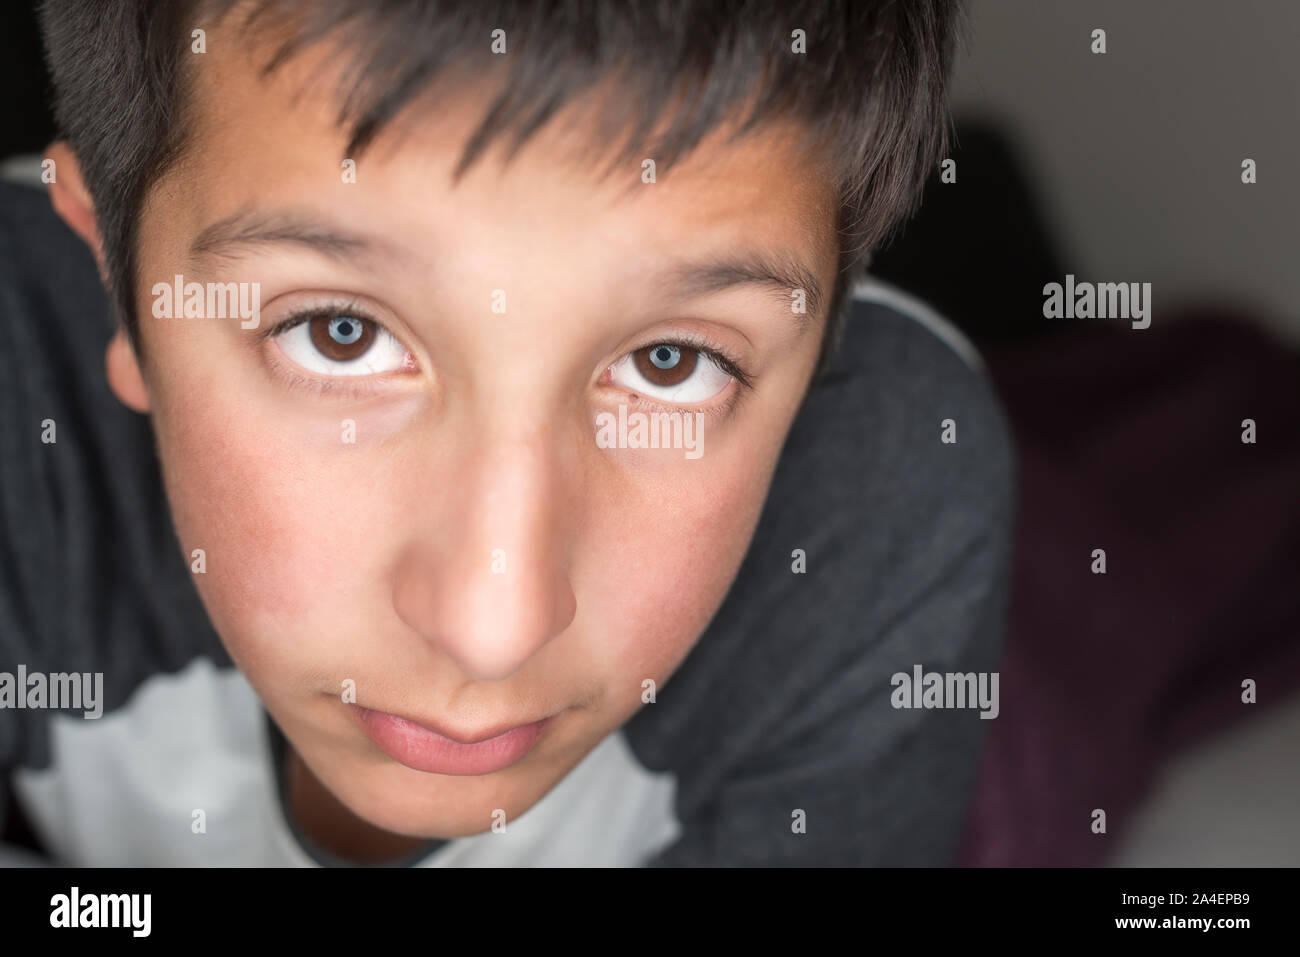 Ritratto di giovane ragazzo , 11 anni - guardando in alto, contatto visivo, close-up Foto Stock